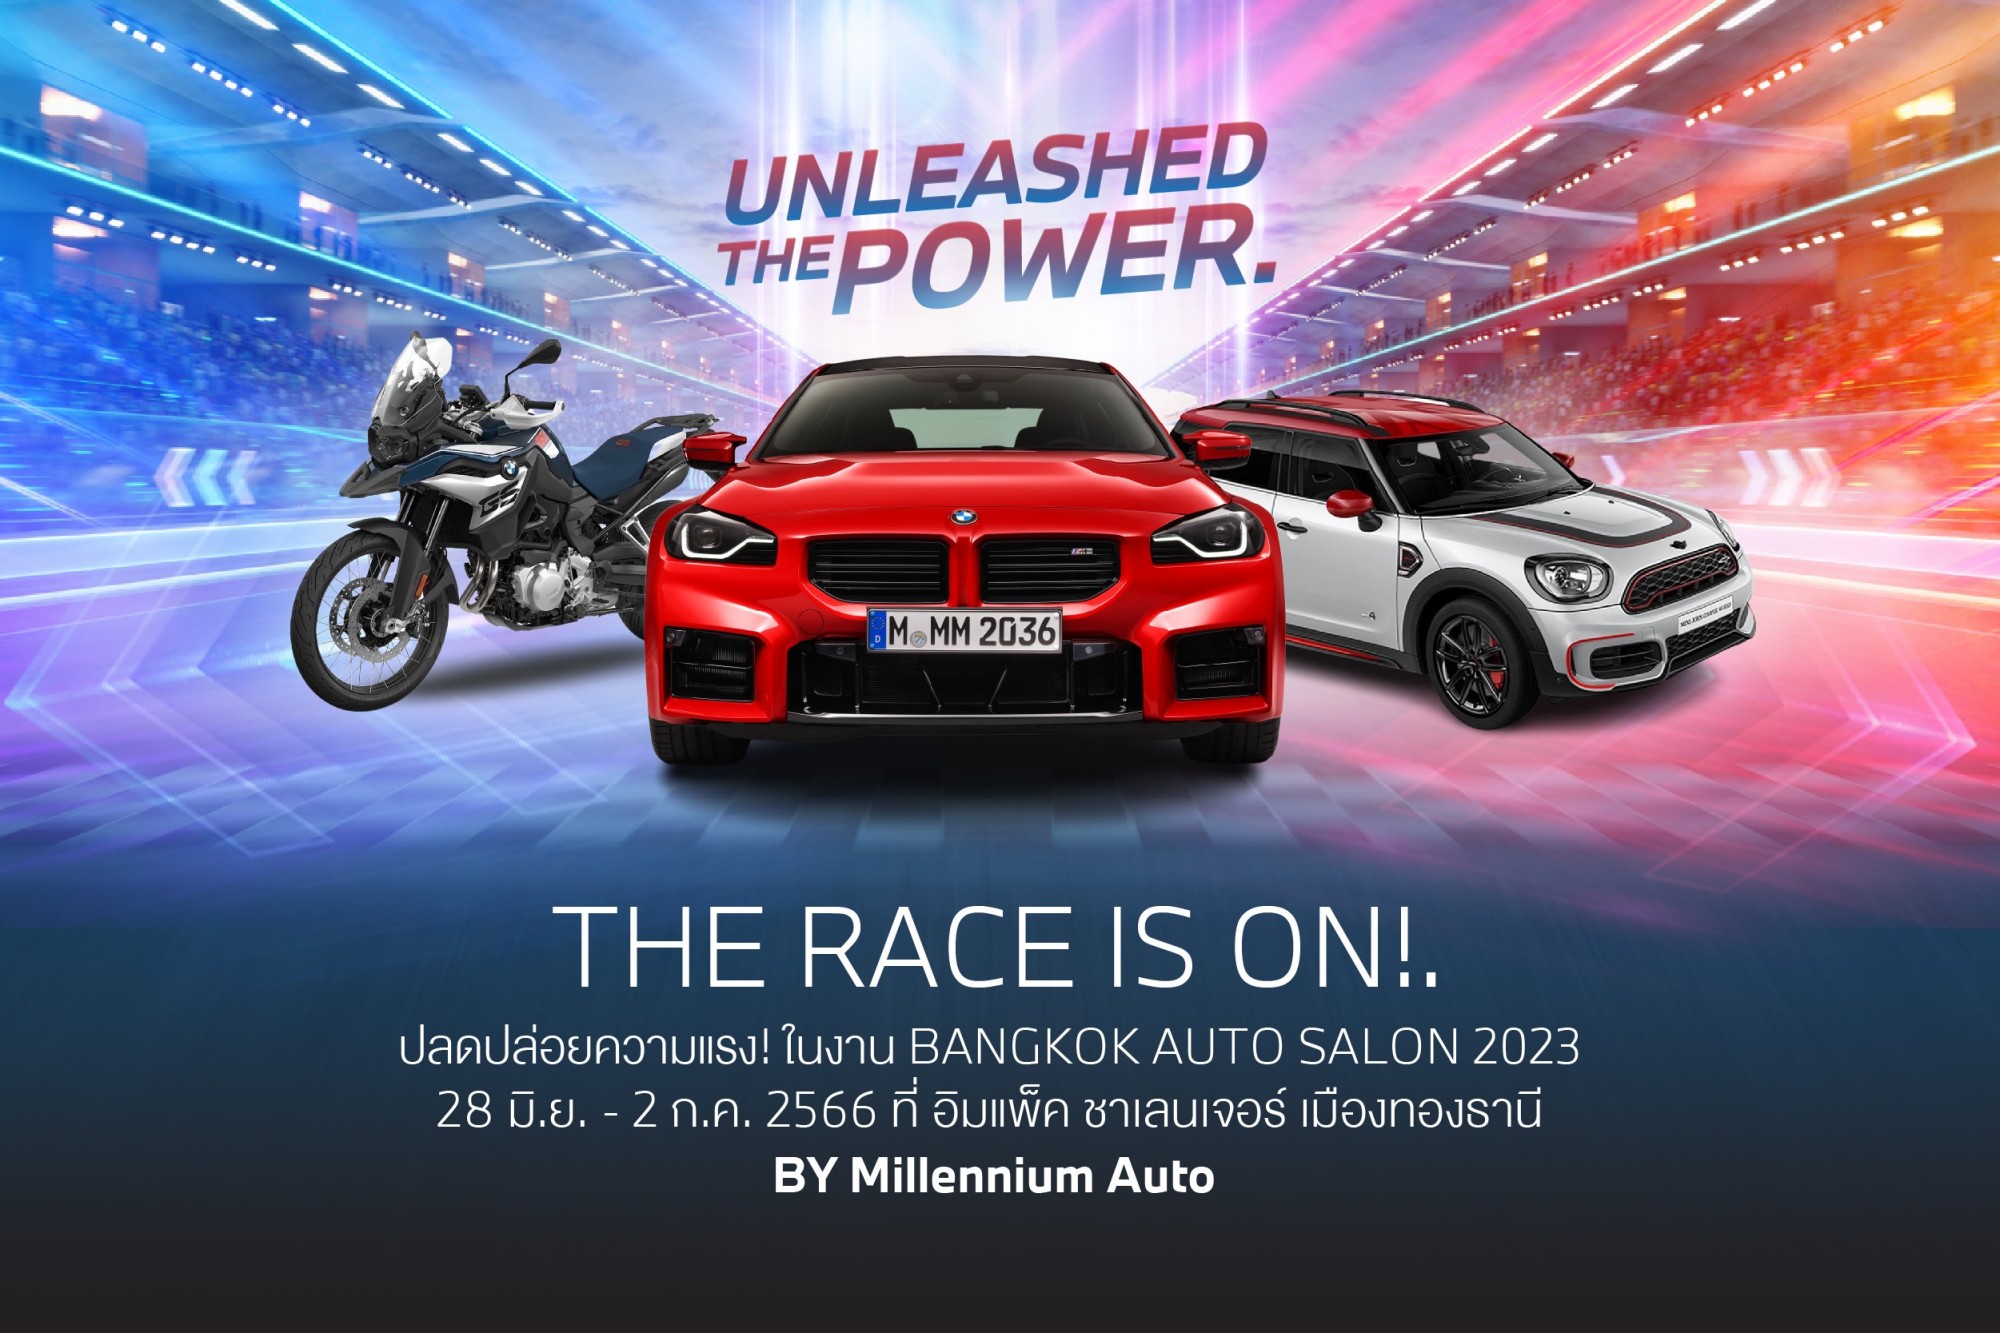 มิลเลนเนียม ออโต้ กรุ๊ปฯ จัดแสดงรถในงาน Bangkok Auto Salon 2023